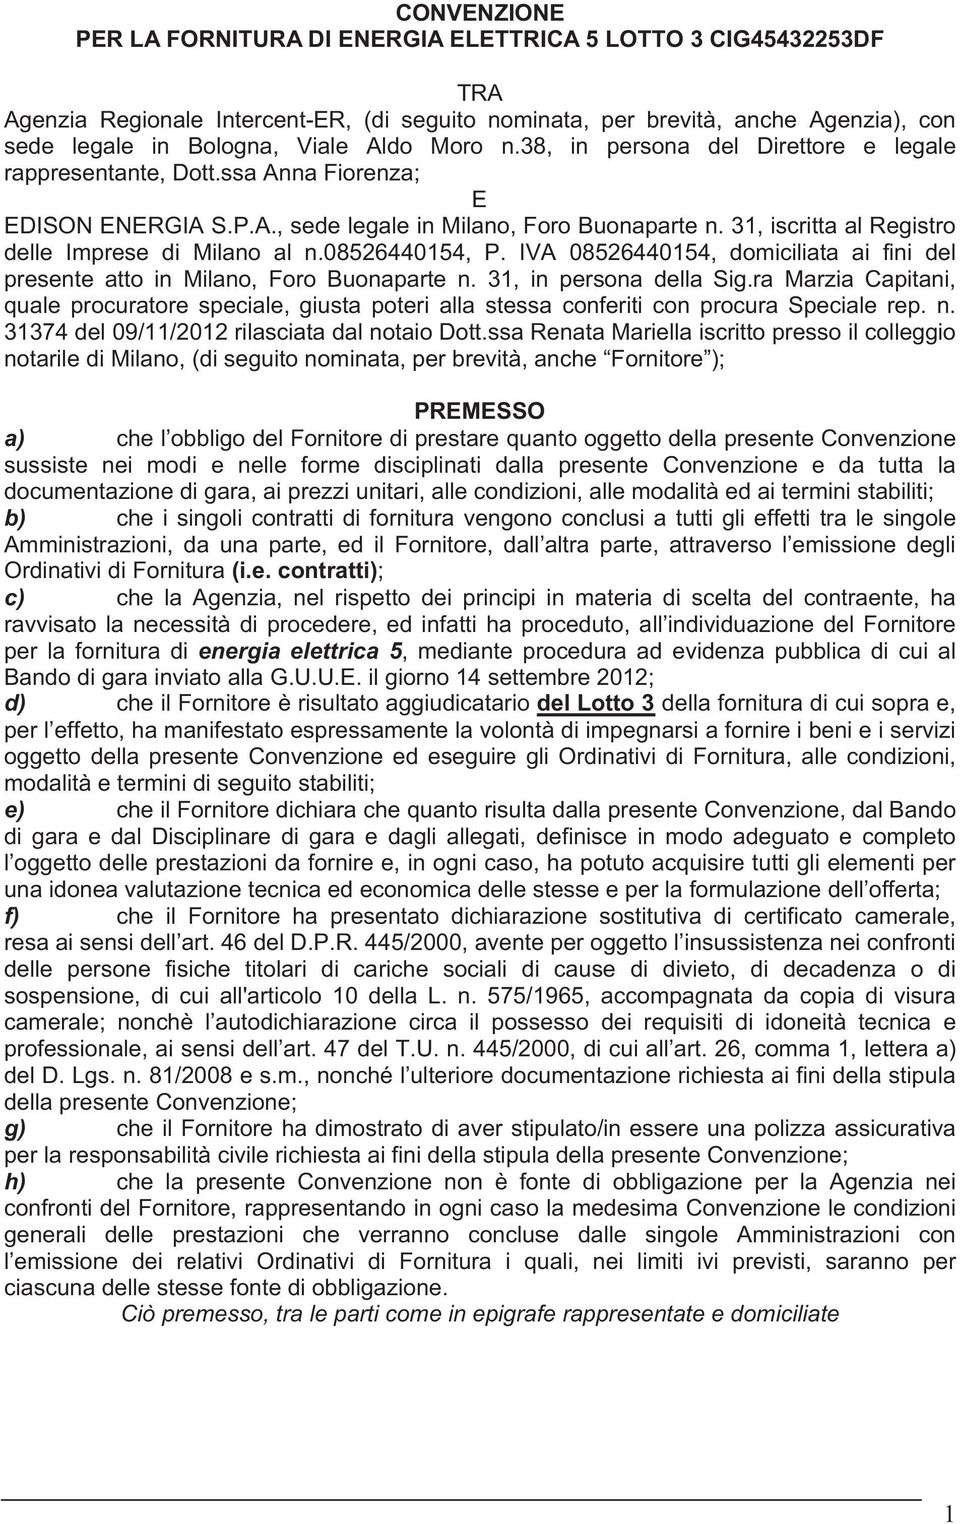 31, iscritta al Registro delle Imprese di Milano al n.08526440154, P. IVA 08526440154, domiciliata ai fini del presente atto in Milano, Foro Buonaparte n. 31, in persona della Sig.